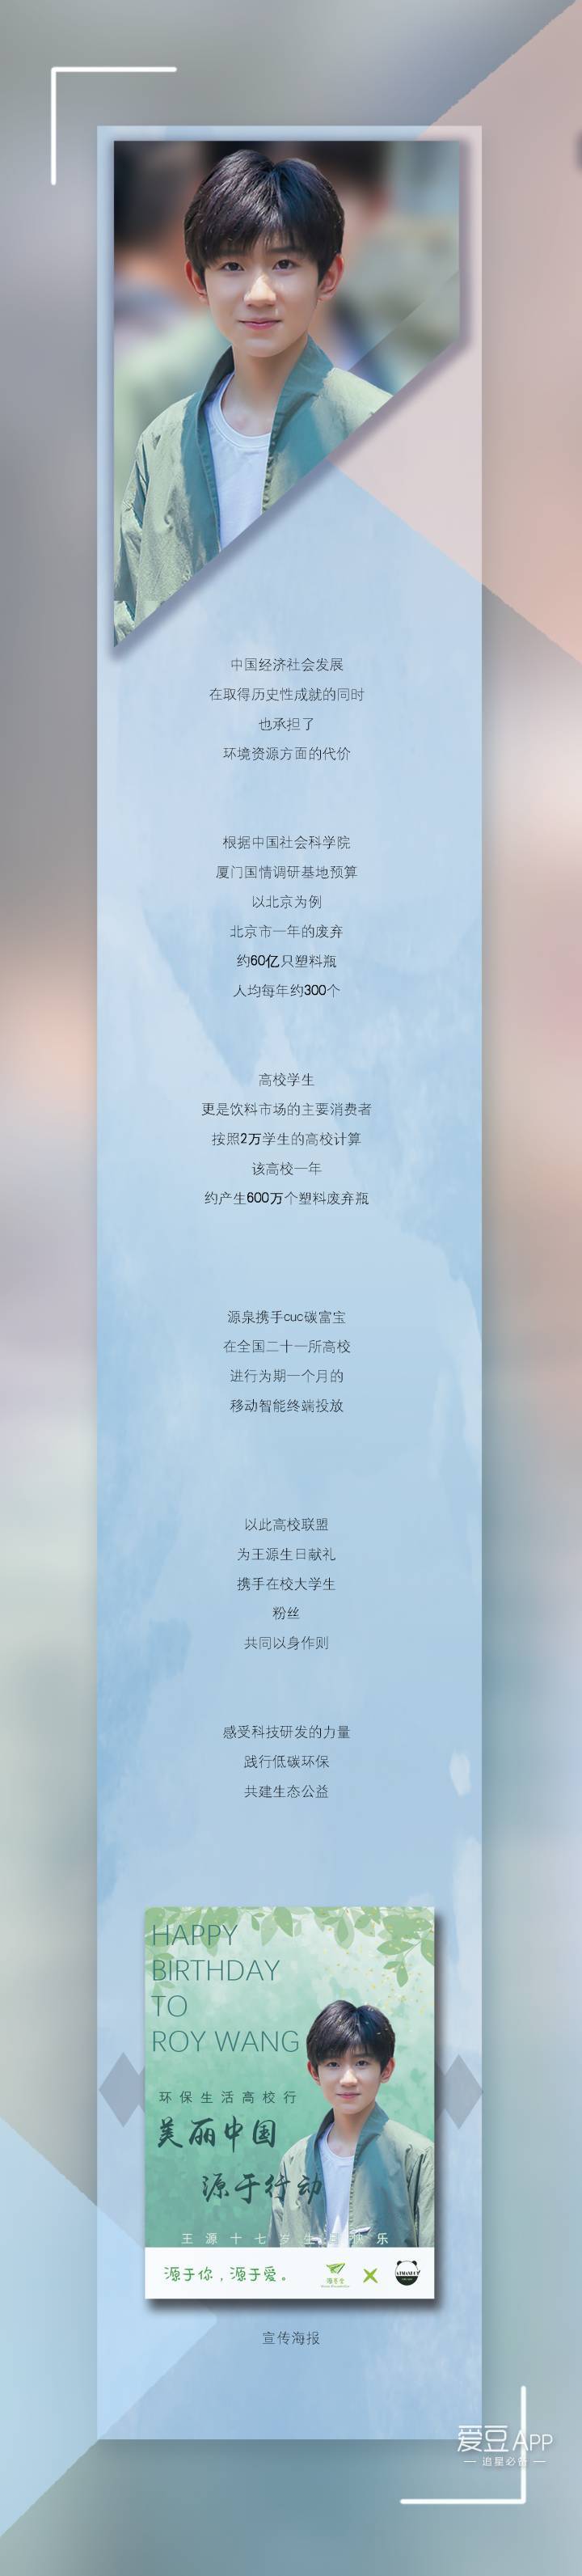 [tfboys][新闻]171101 王源生日公益应援 环保生活高校行·美丽中国